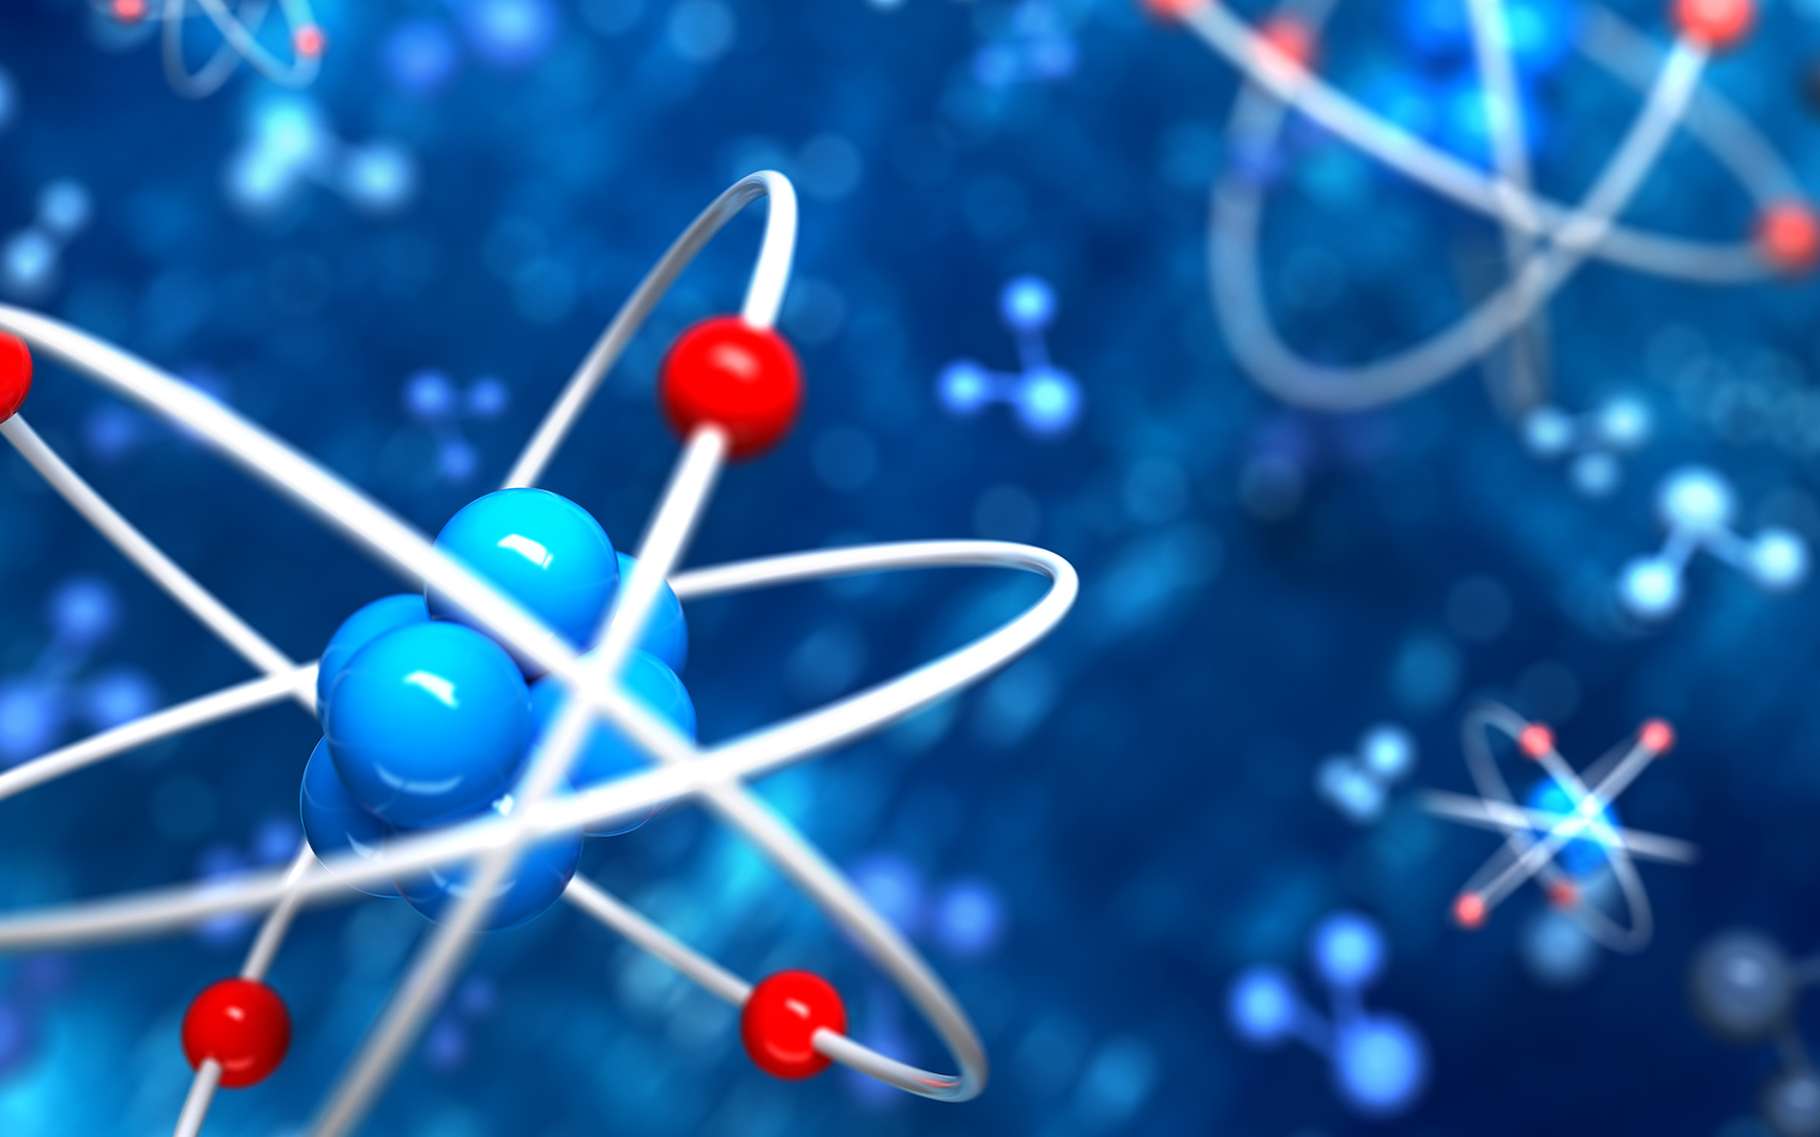 Les isotopes sont des atomes possédant le même nombre de protons mais pas le même nombre de neutrons. © Leigh Prather, Shutterstock